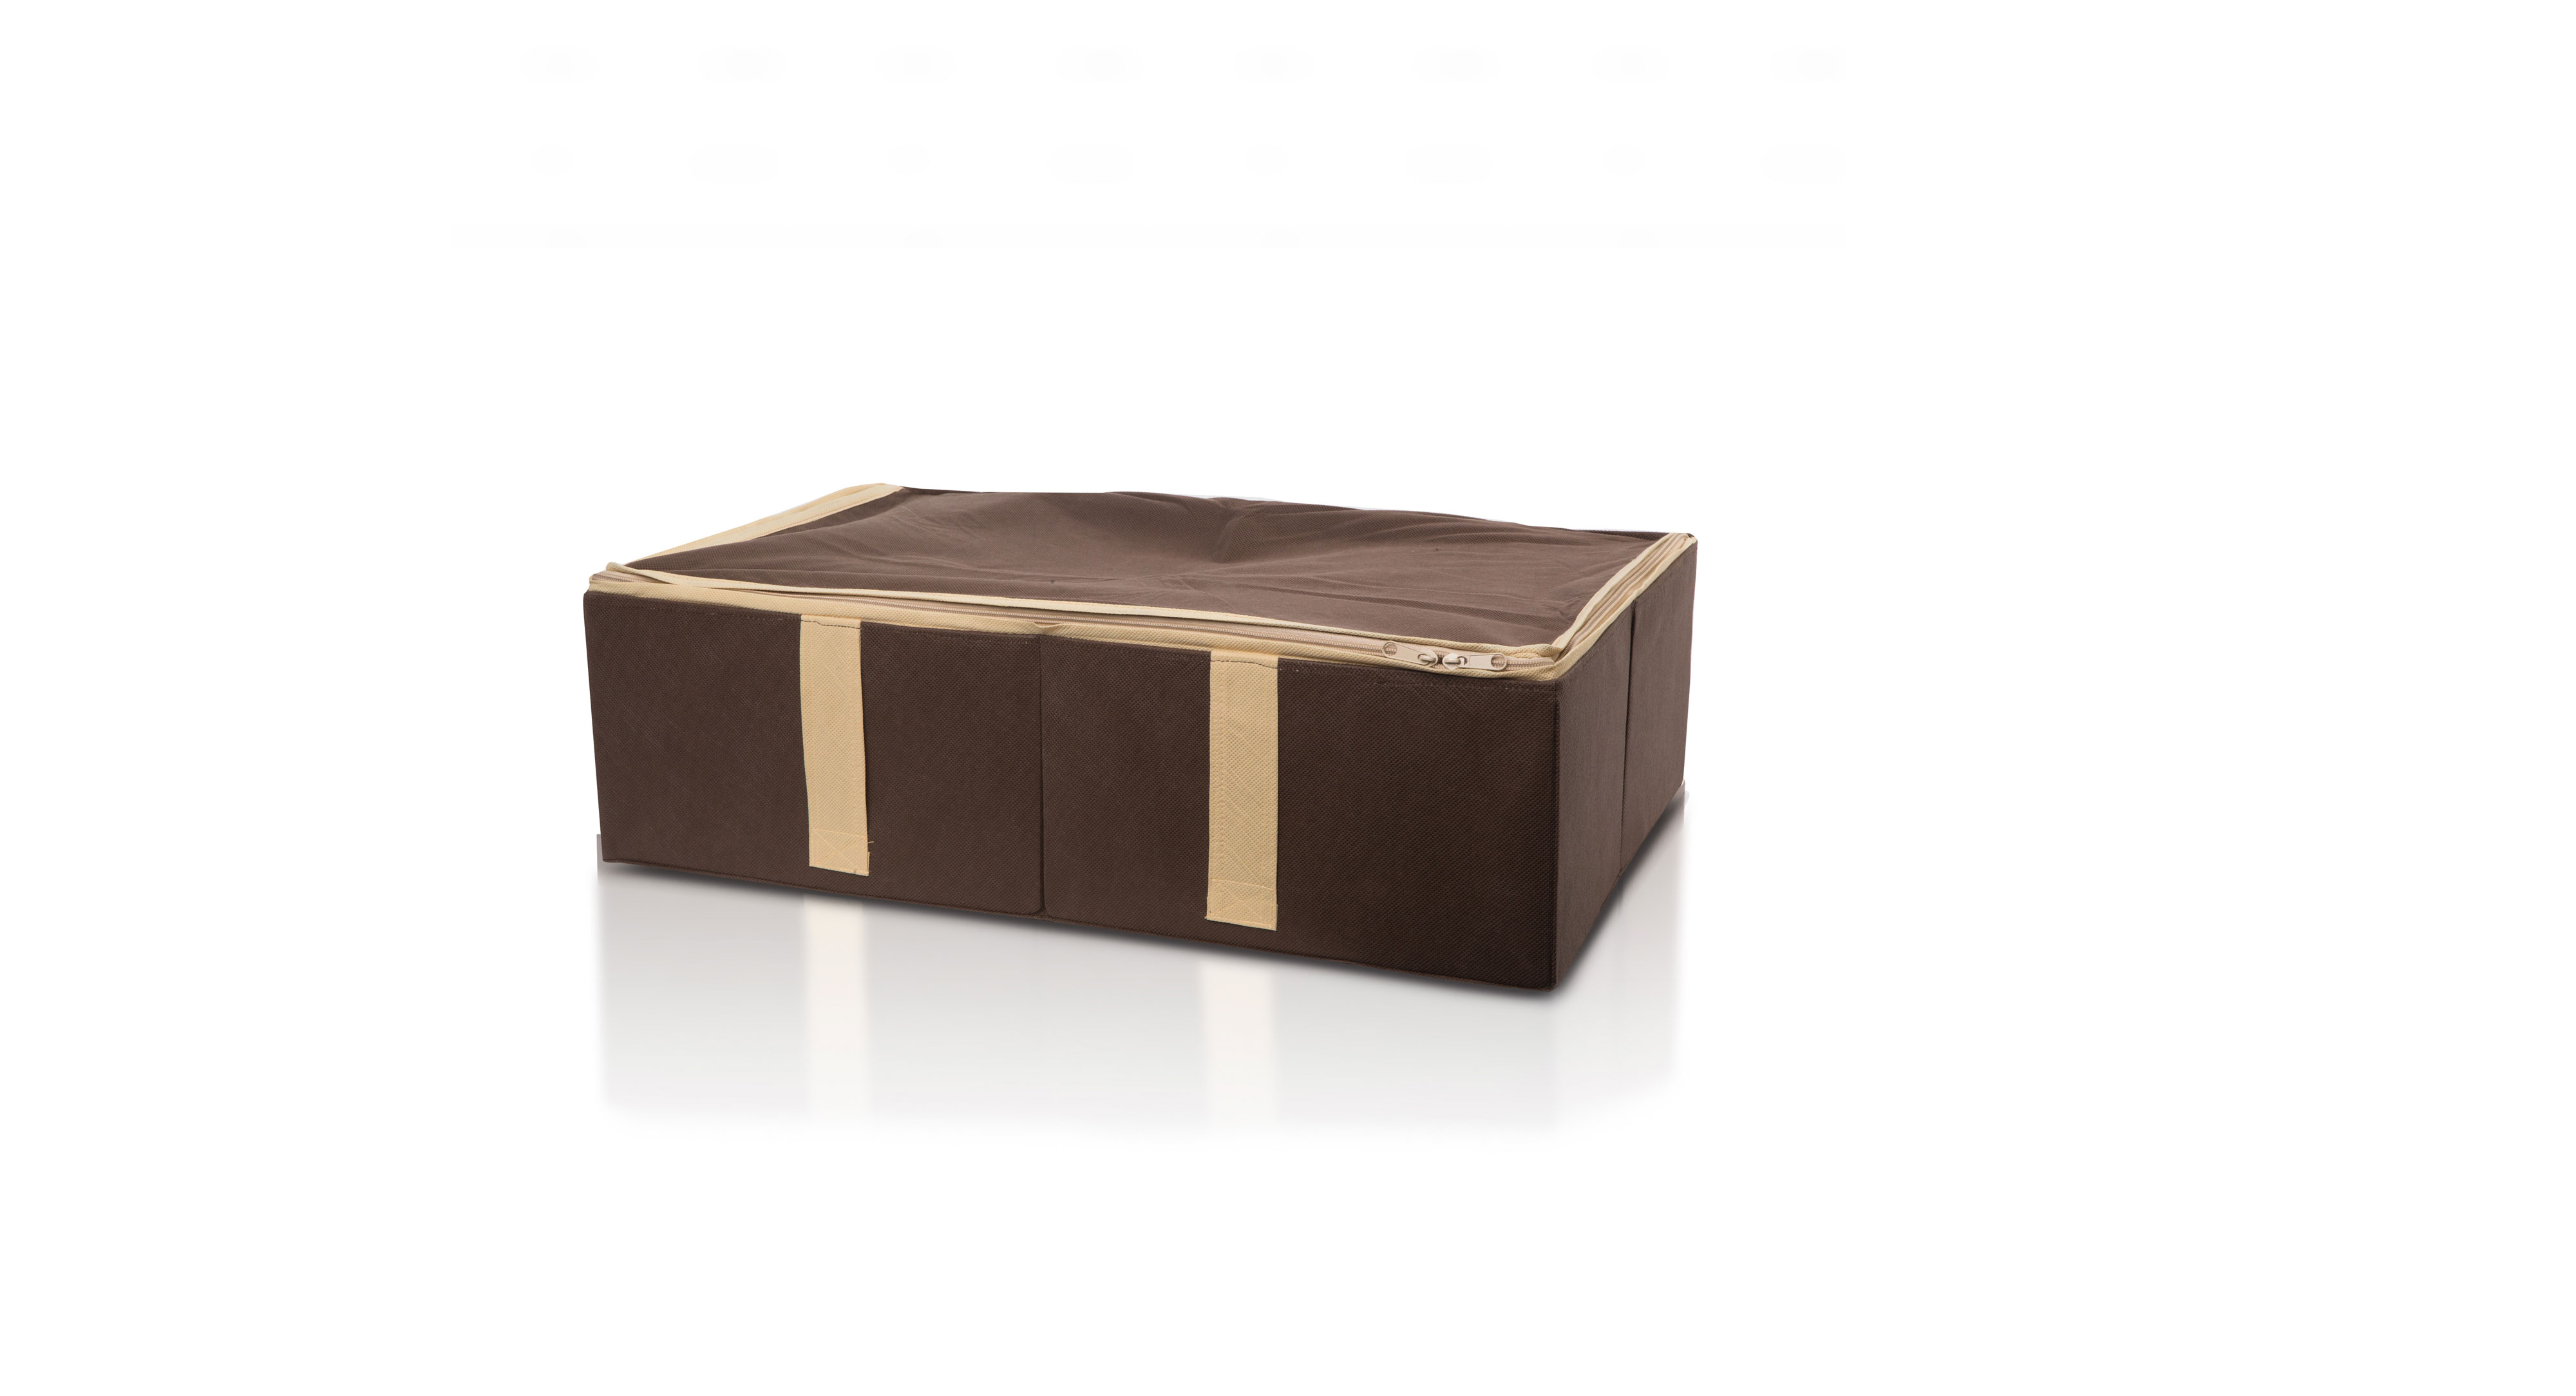 Ящик для хранения "Chocolate Cake" с крышкой на молнии